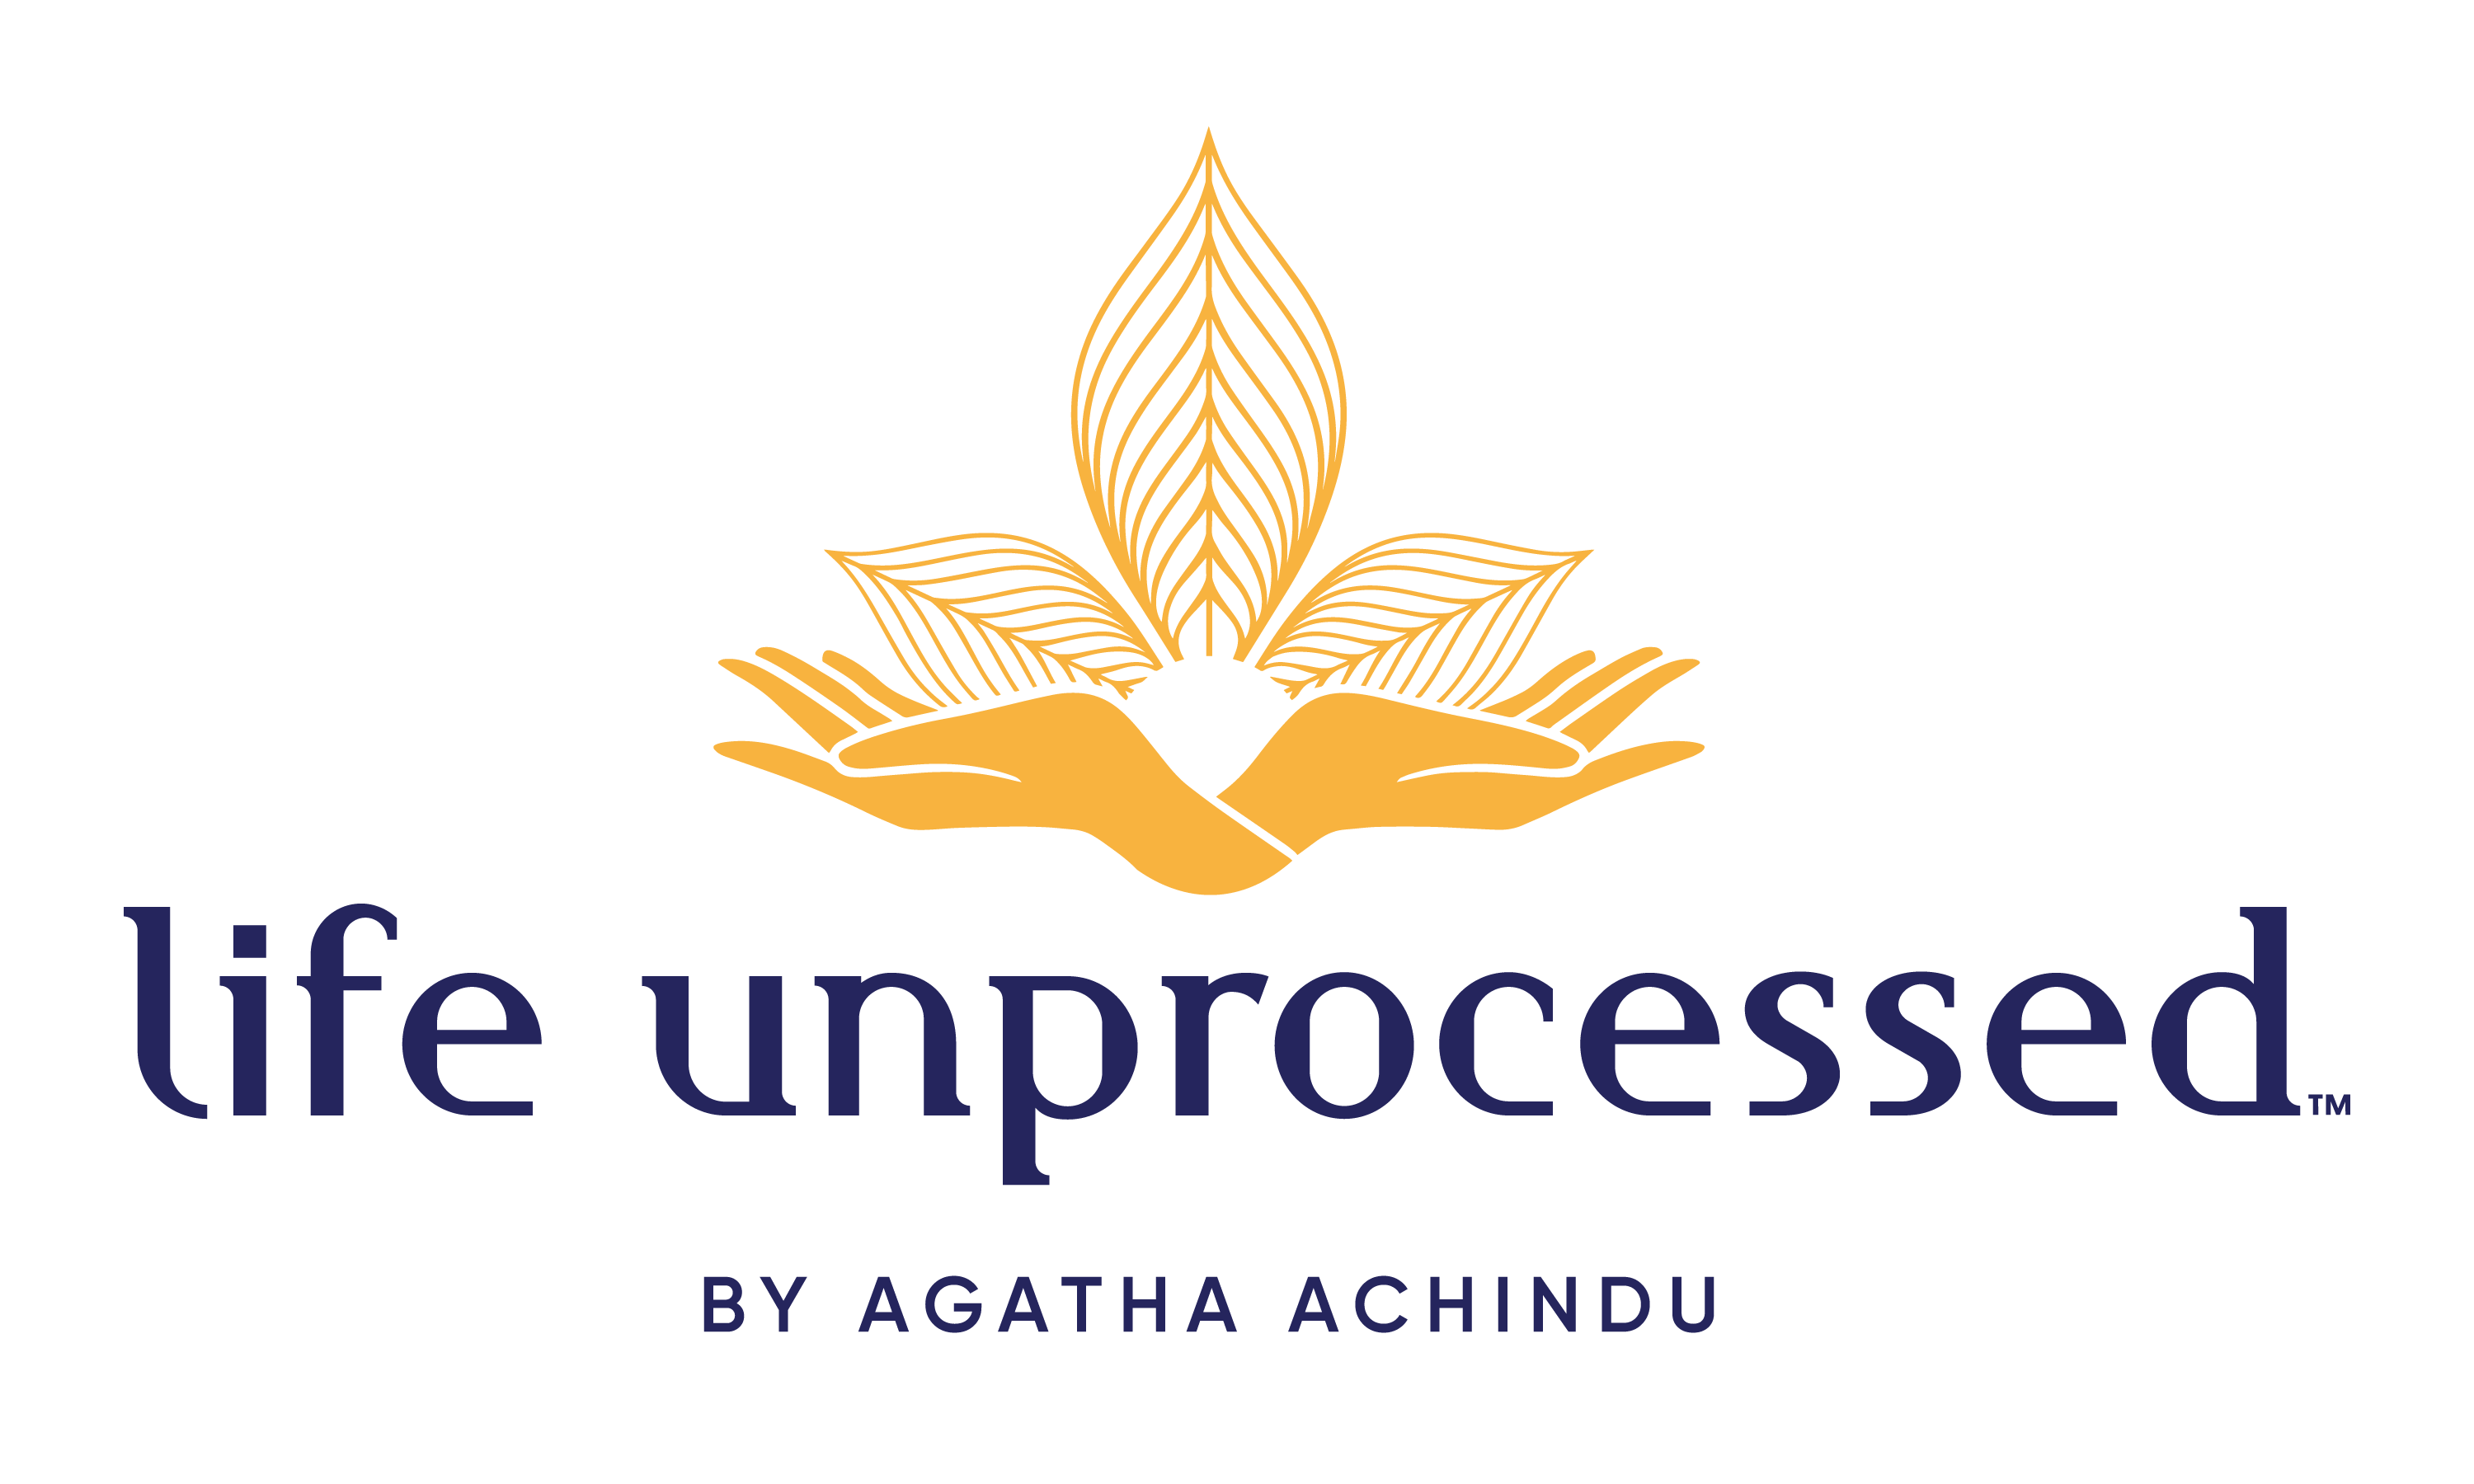 Agatha Achindu